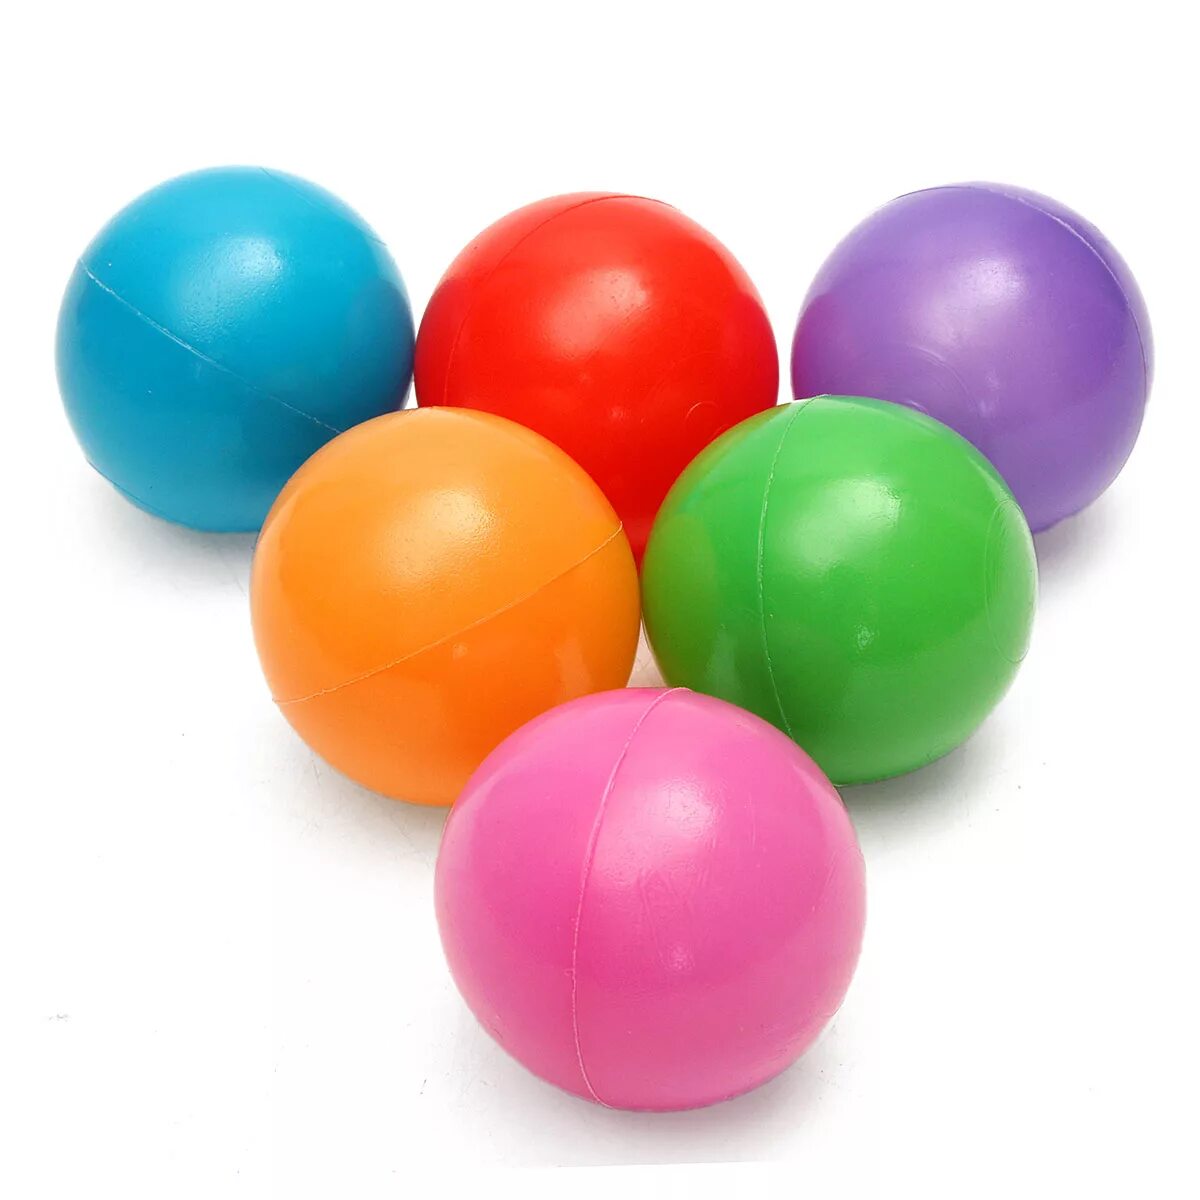 15 игрушек шаров. Цветные мячики. Пластиковый мячик. Пластмассовые шарики. Пластмассовые мячики для детей.